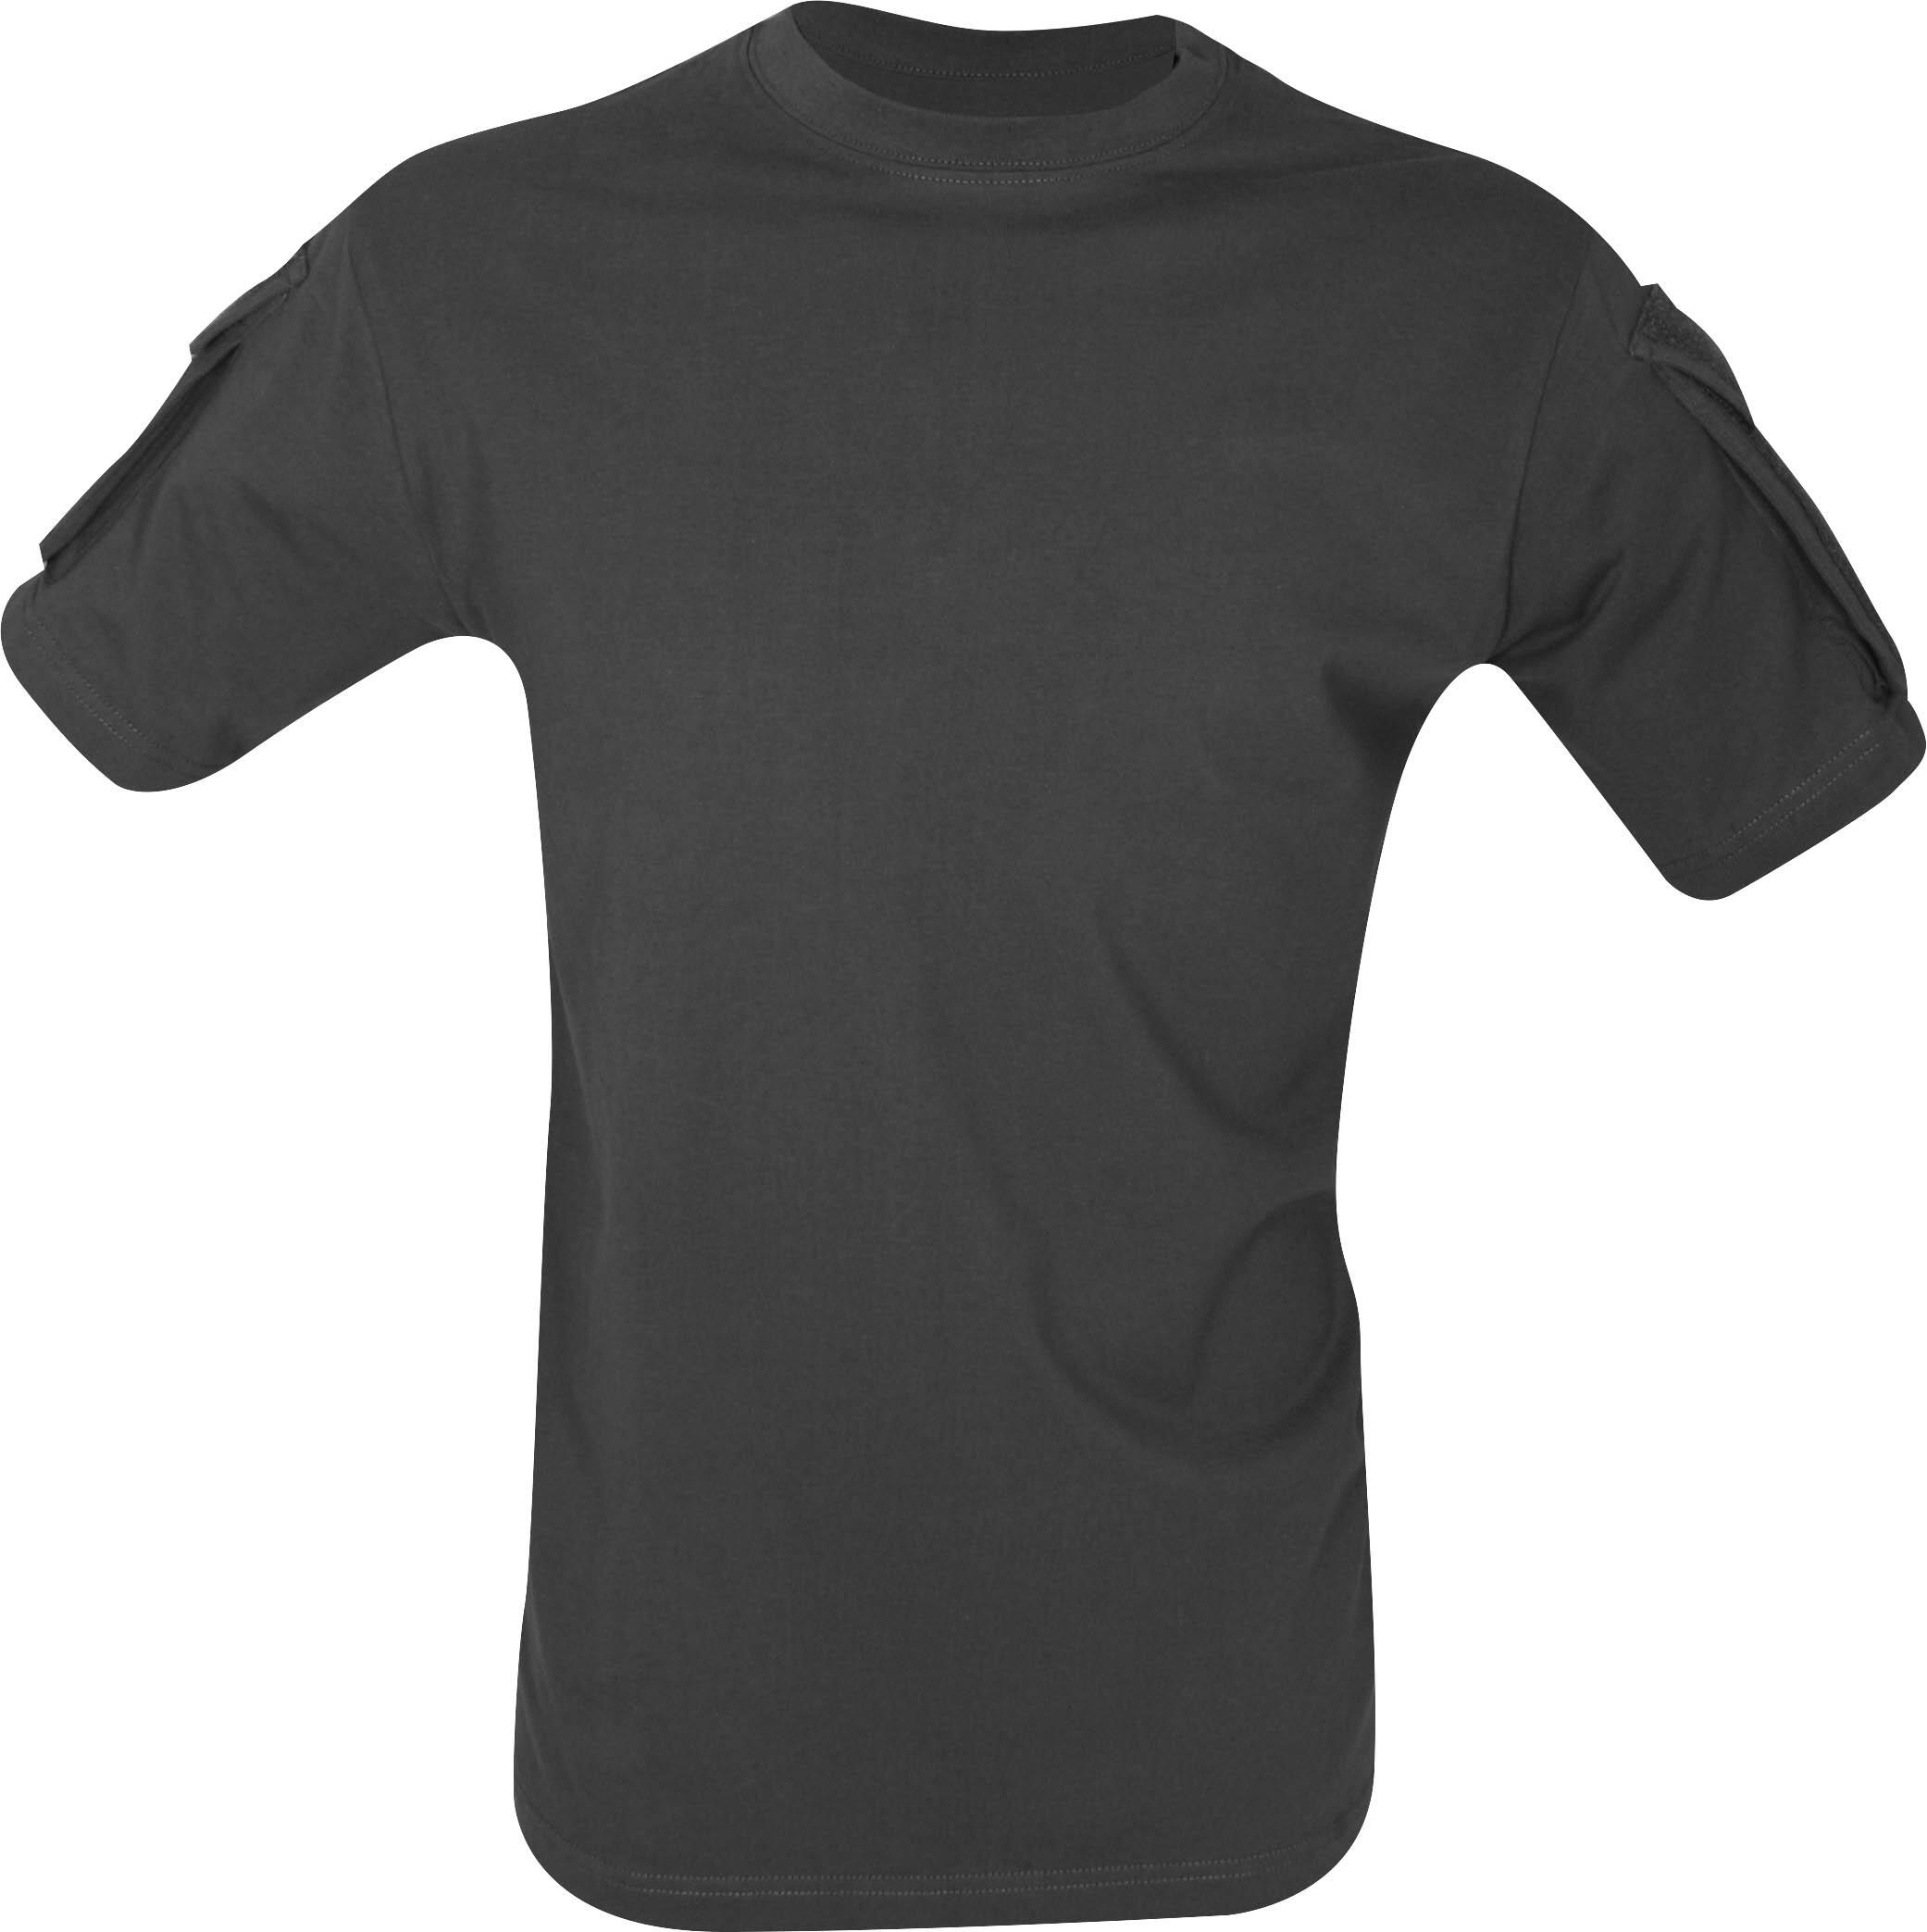 Viper Tactical T-Shirt - Black